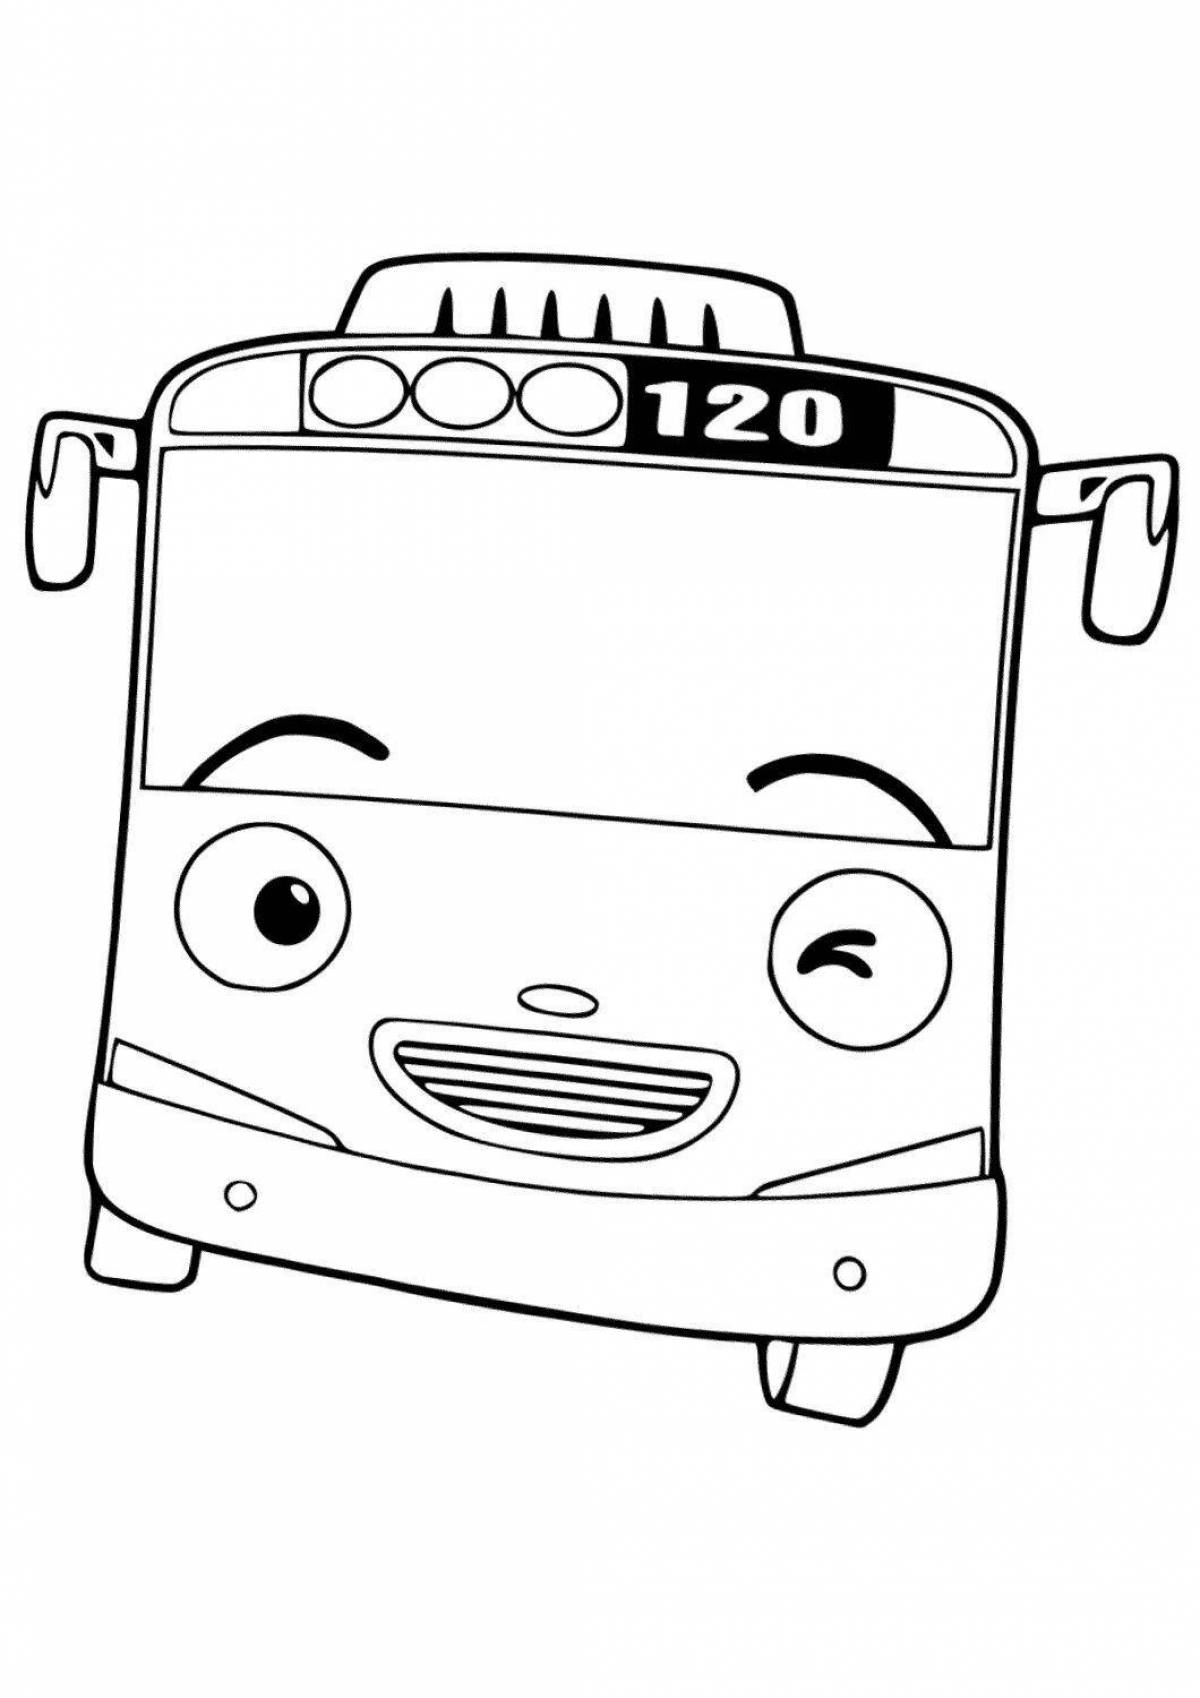 Красочный маленький автобус tayo coloring page